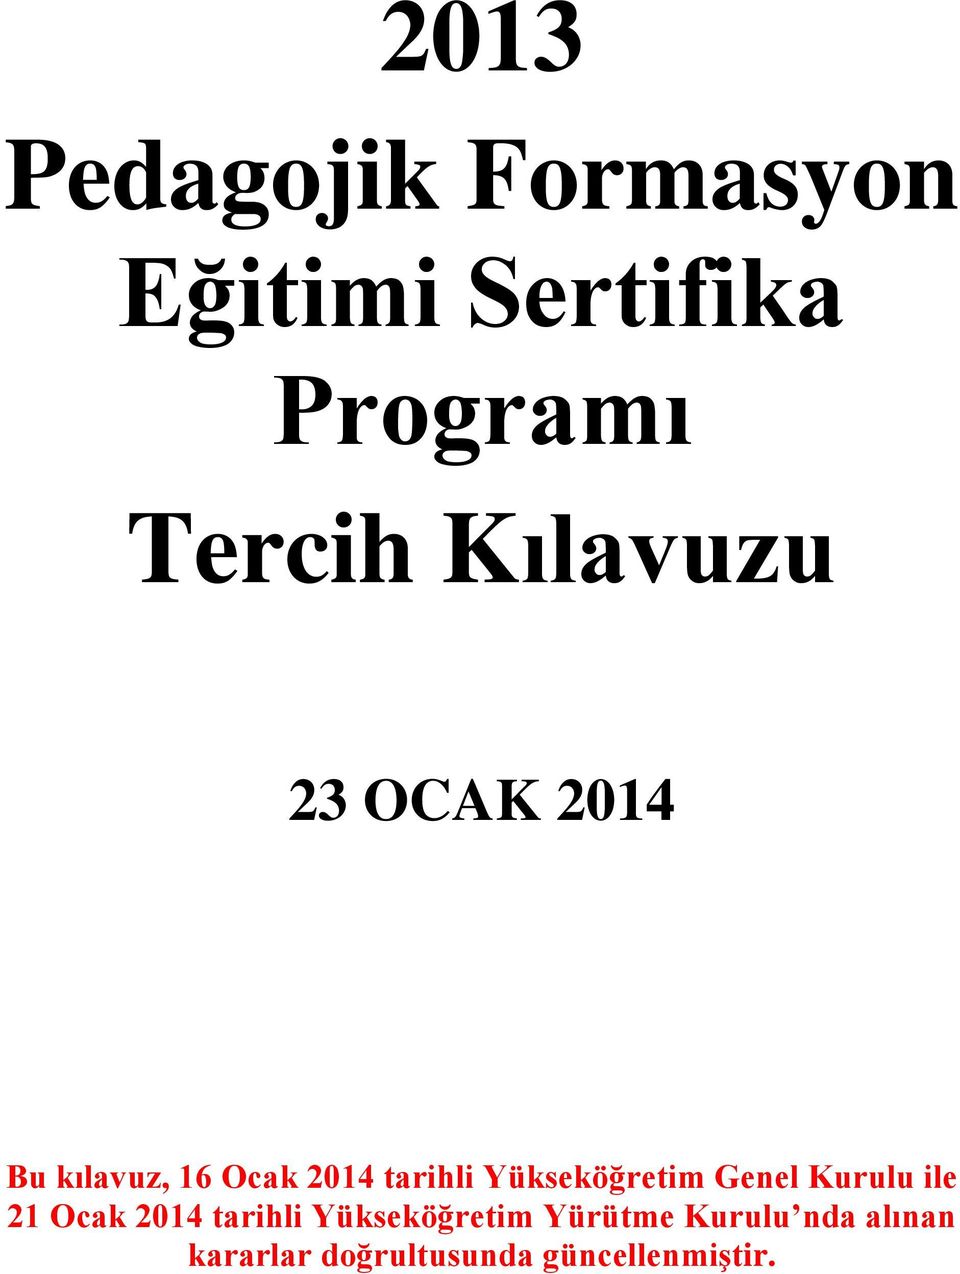 Yükseköğretim Genel Kurulu ile 21 Ocak 2014 tarihli